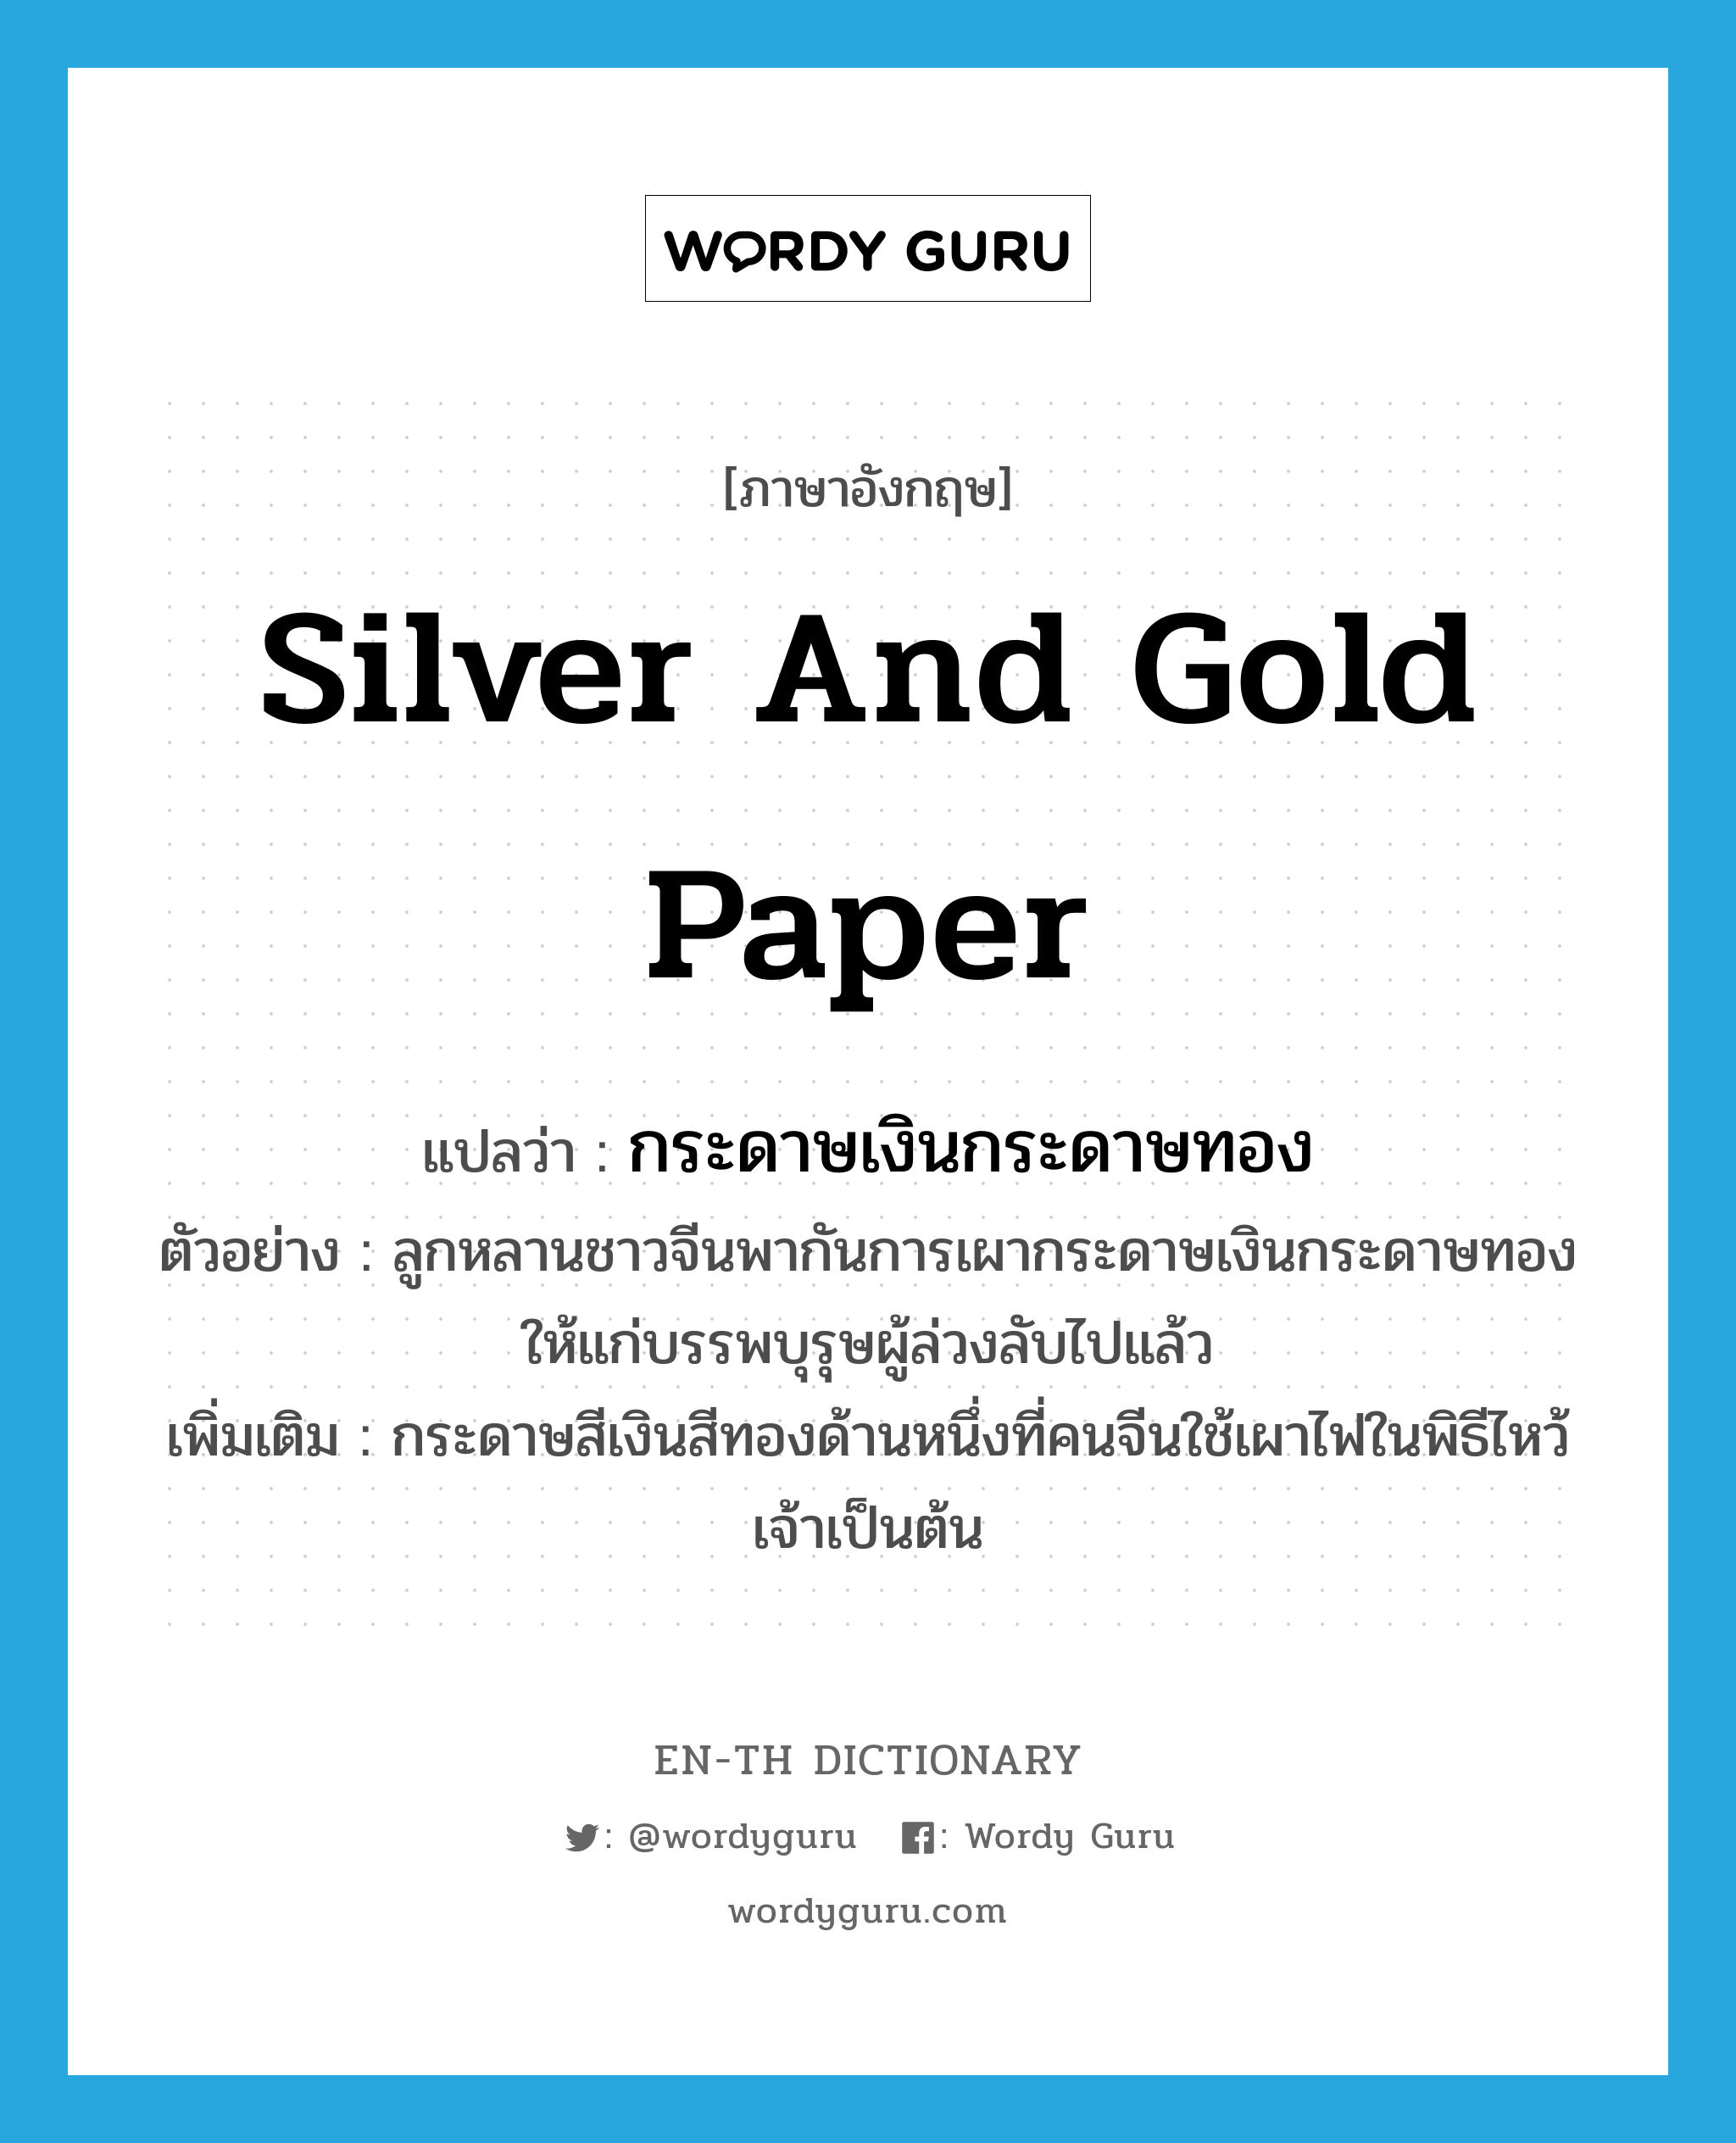 กระดาษเงินกระดาษทอง ภาษาอังกฤษ?, คำศัพท์ภาษาอังกฤษ กระดาษเงินกระดาษทอง แปลว่า silver and gold paper ประเภท N ตัวอย่าง ลูกหลานชาวจีนพากันการเผากระดาษเงินกระดาษทองให้แก่บรรพบุรุษผู้ล่วงลับไปแล้ว เพิ่มเติม กระดาษสีเงินสีทองด้านหนึ่งที่คนจีนใช้เผาไฟในพิธีไหว้เจ้าเป็นต้น หมวด N